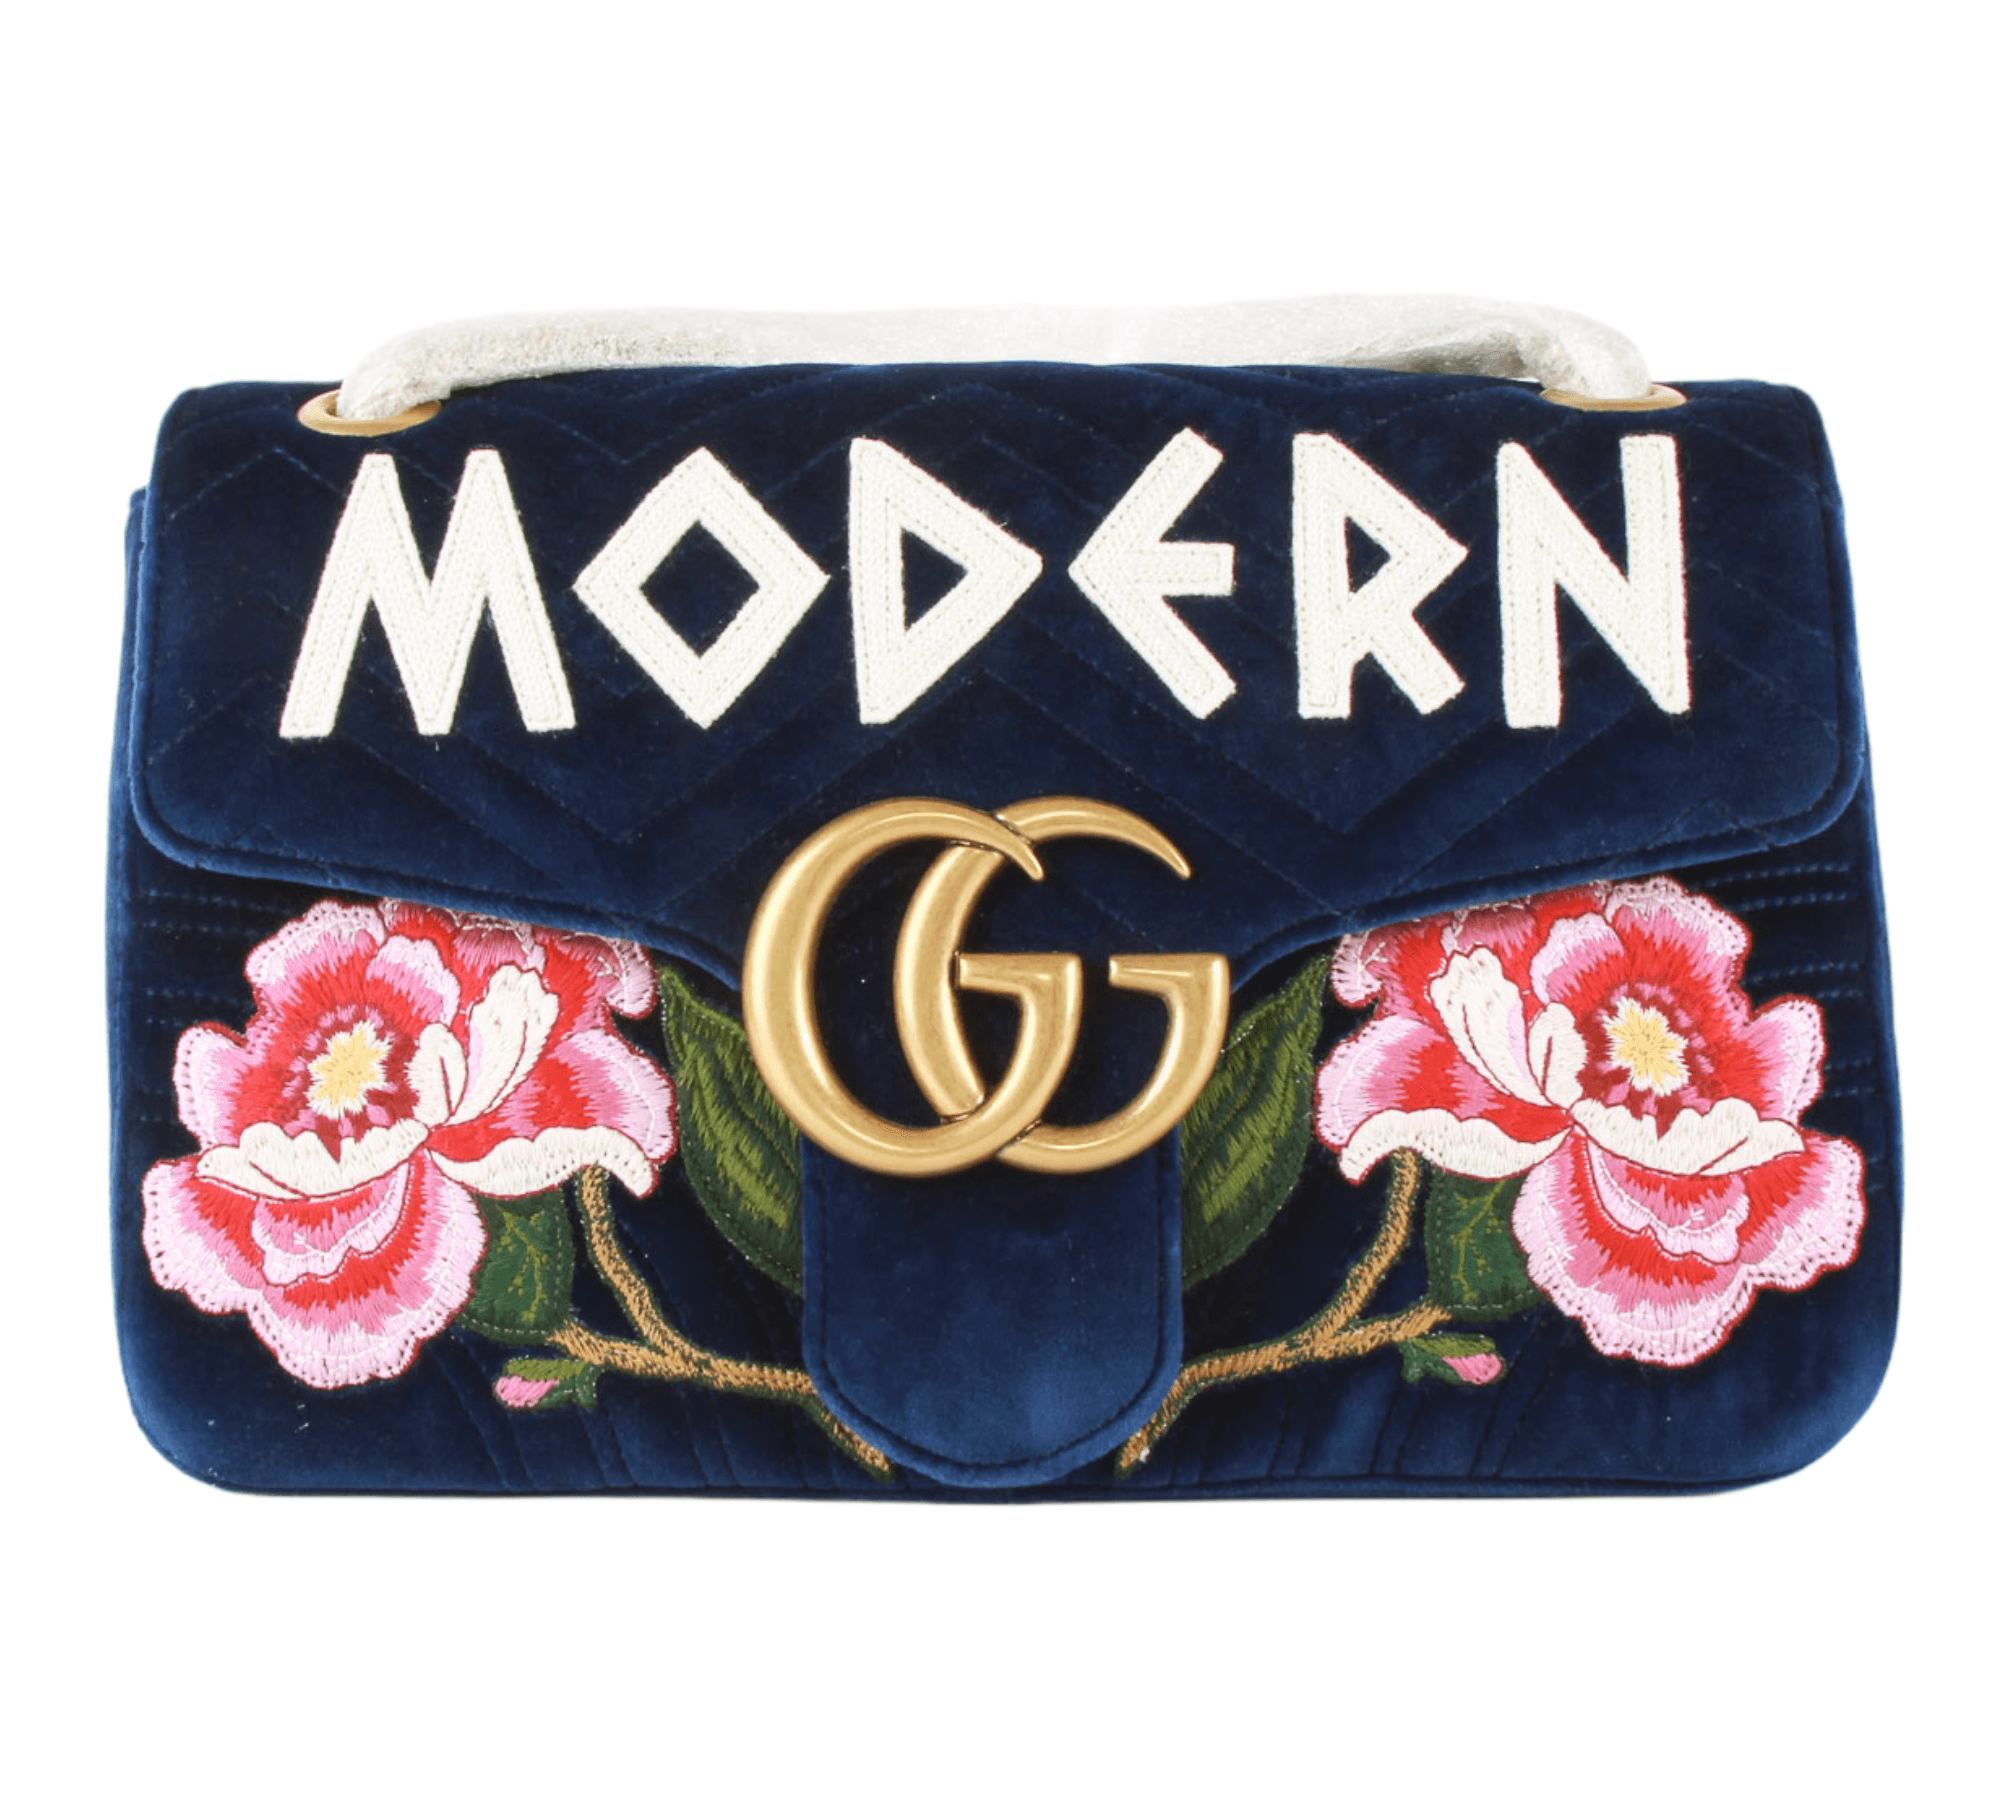 Gucci GG Marmont Velvet Crossbody Bag